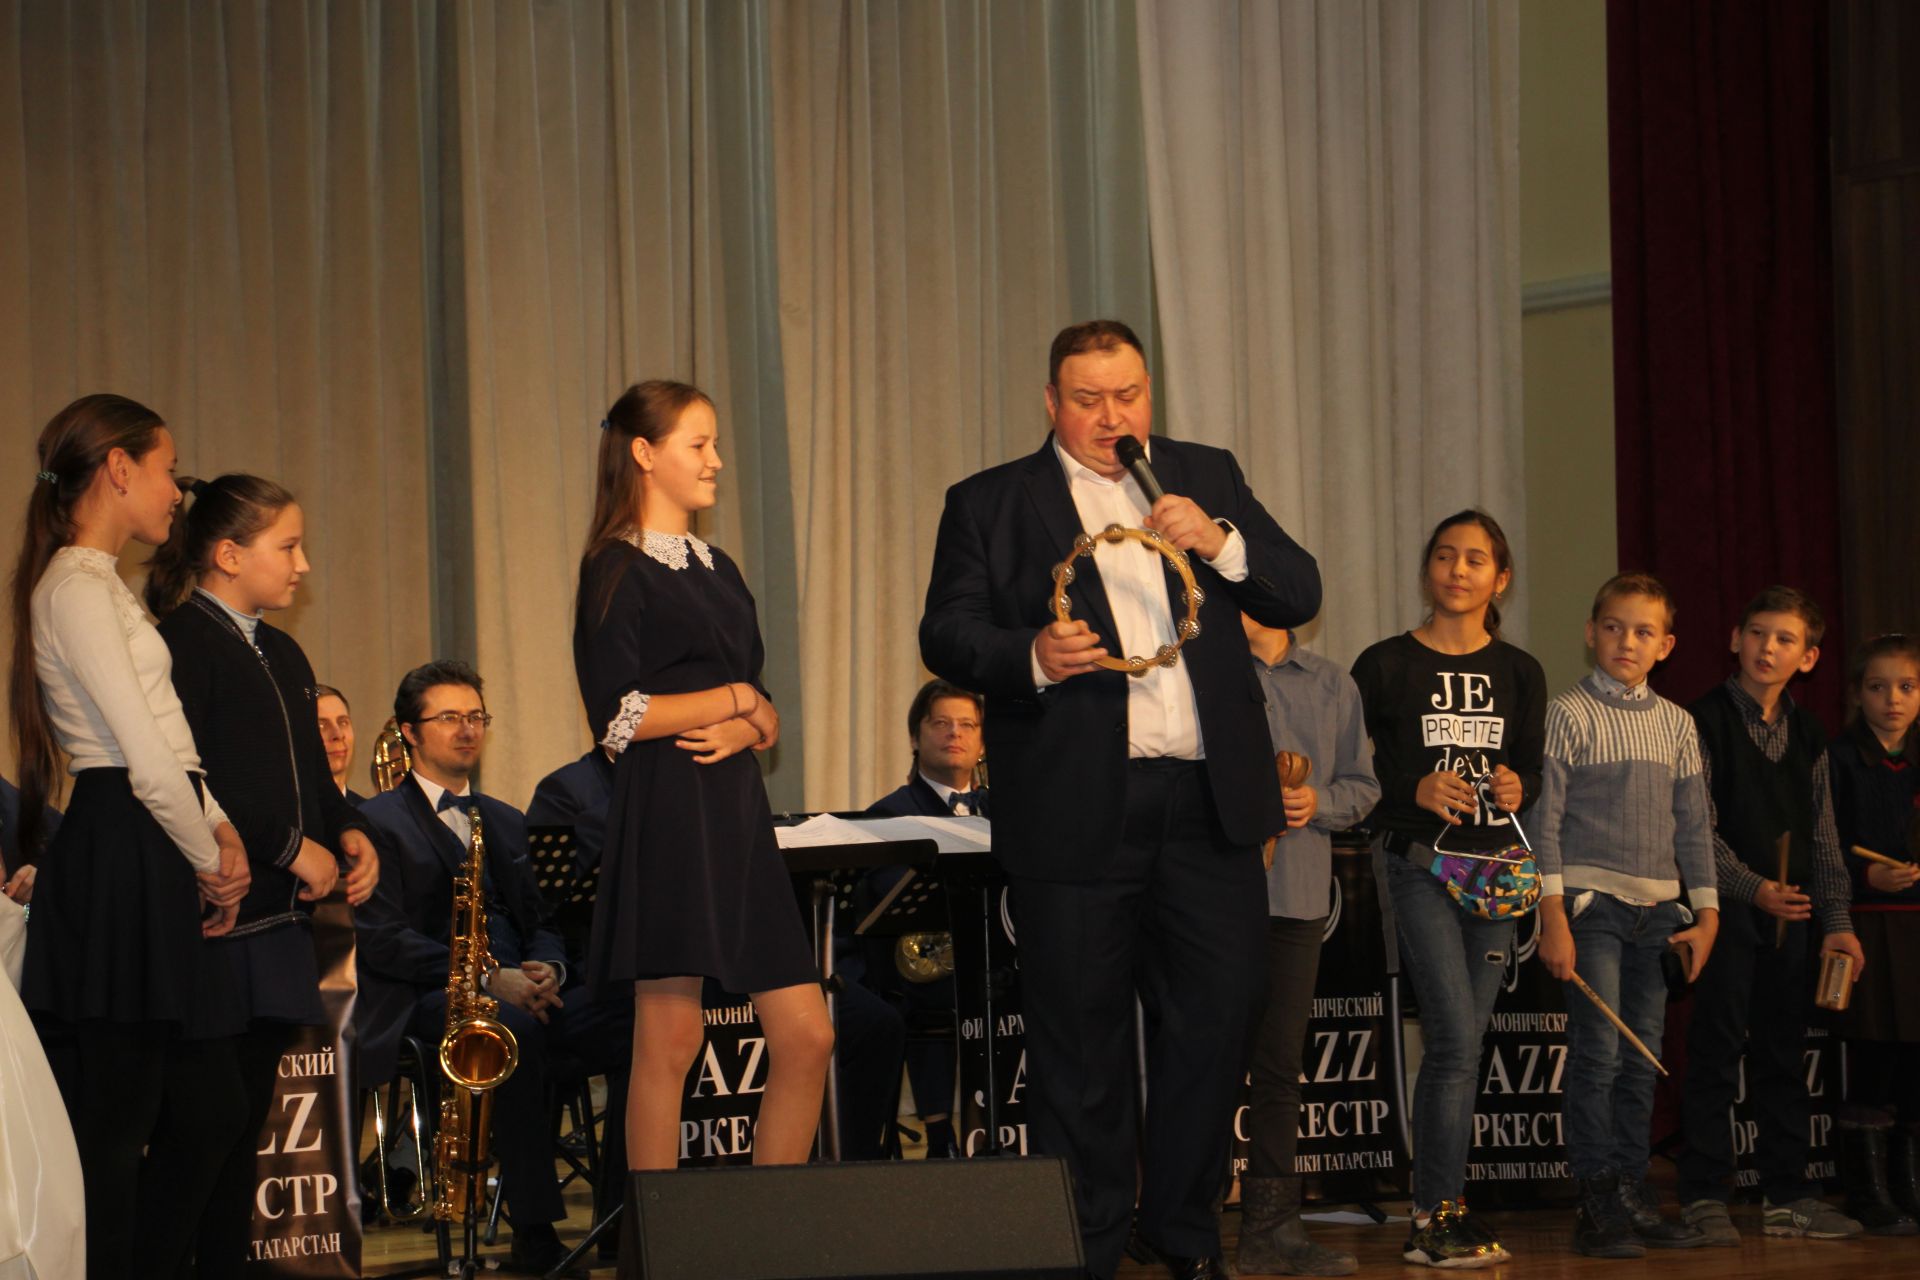 Татарстан Дәүләт консерваториясенең джаз оркестры кечкенә әлкилеләргә чын мәгънәсендә музыка бәйрәме бүләк итте